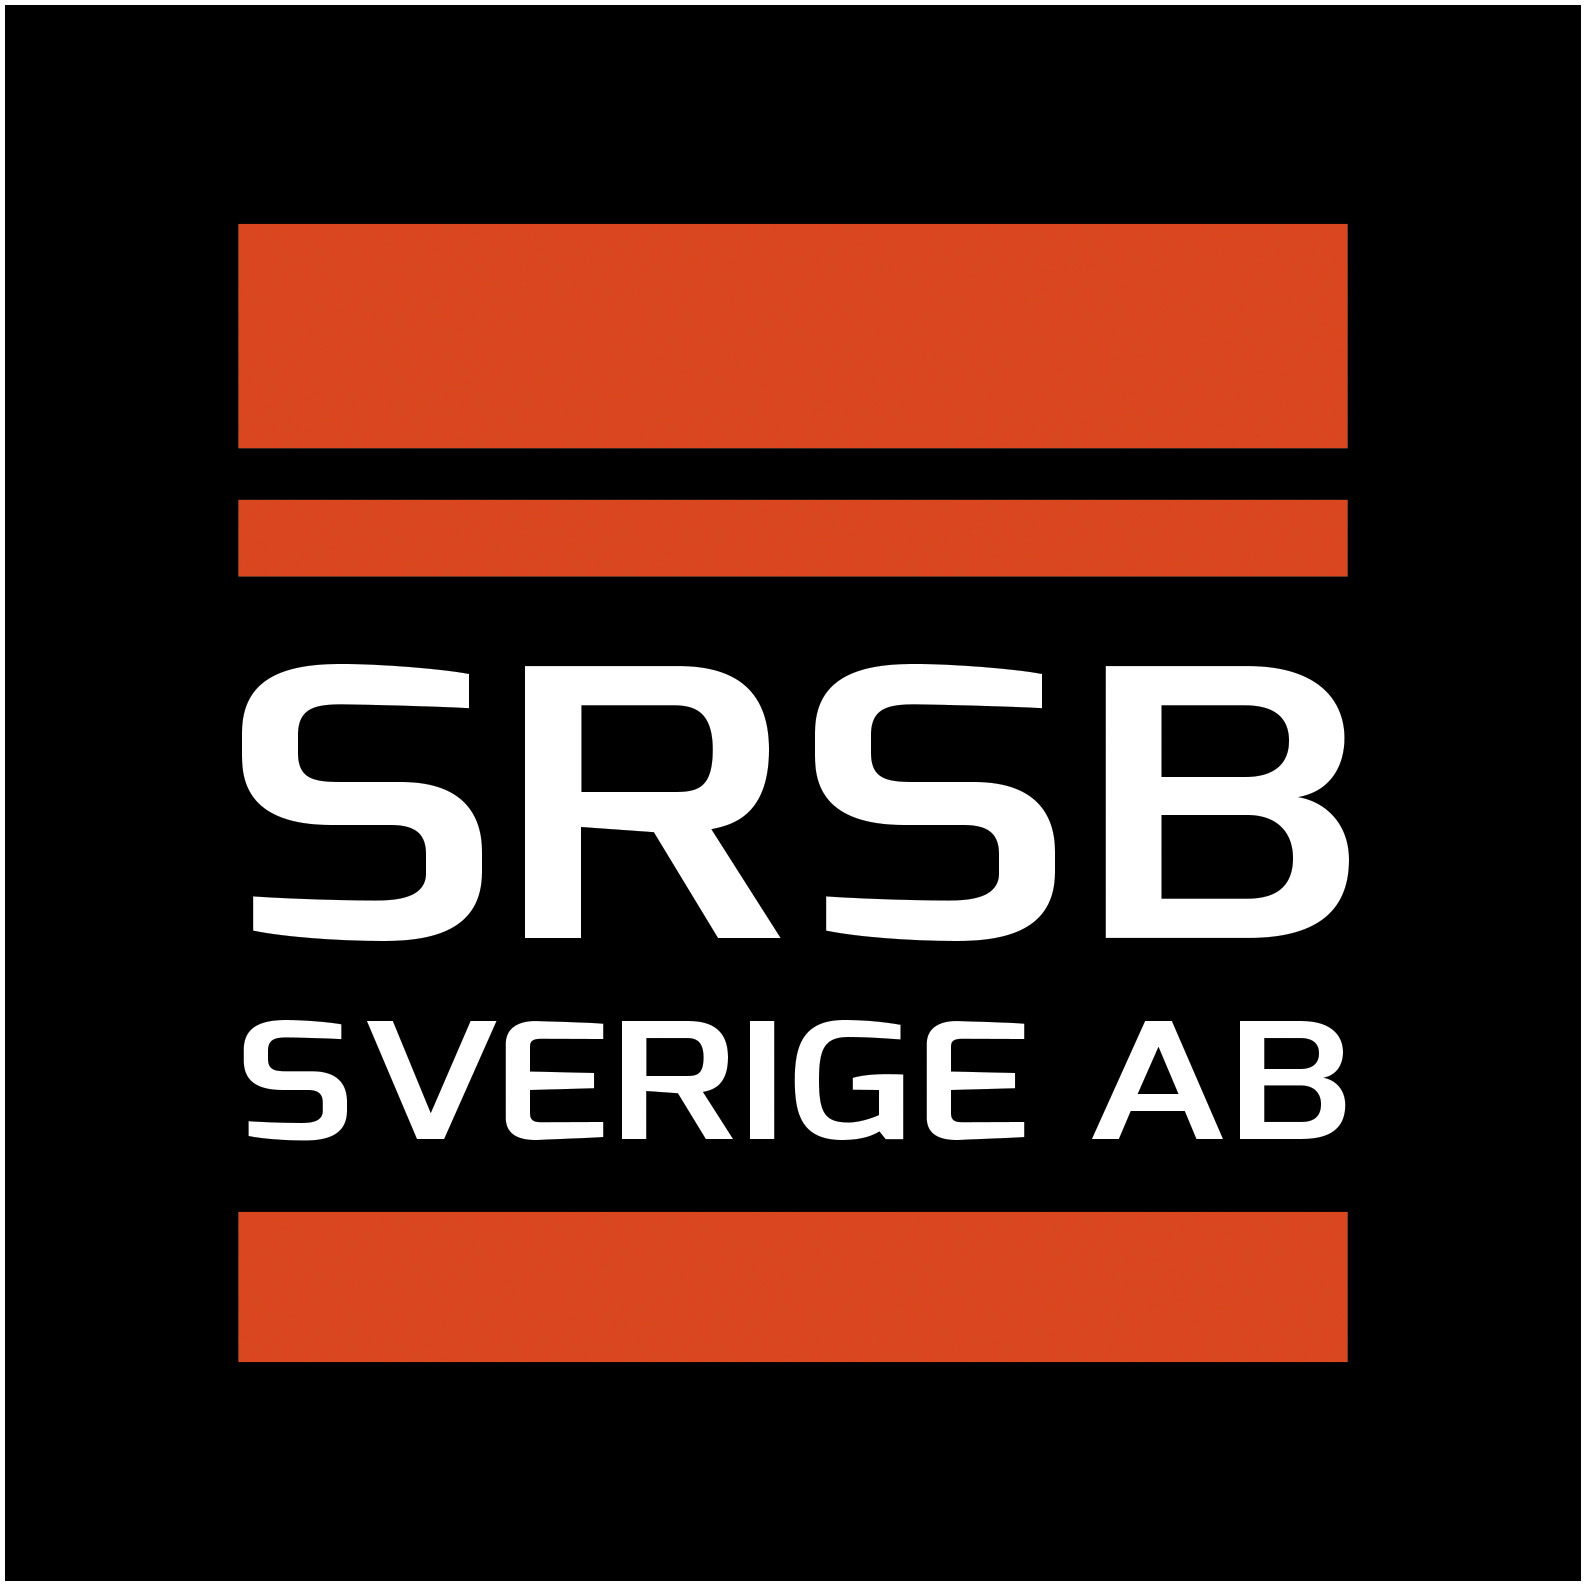 SRSB Sverige AB